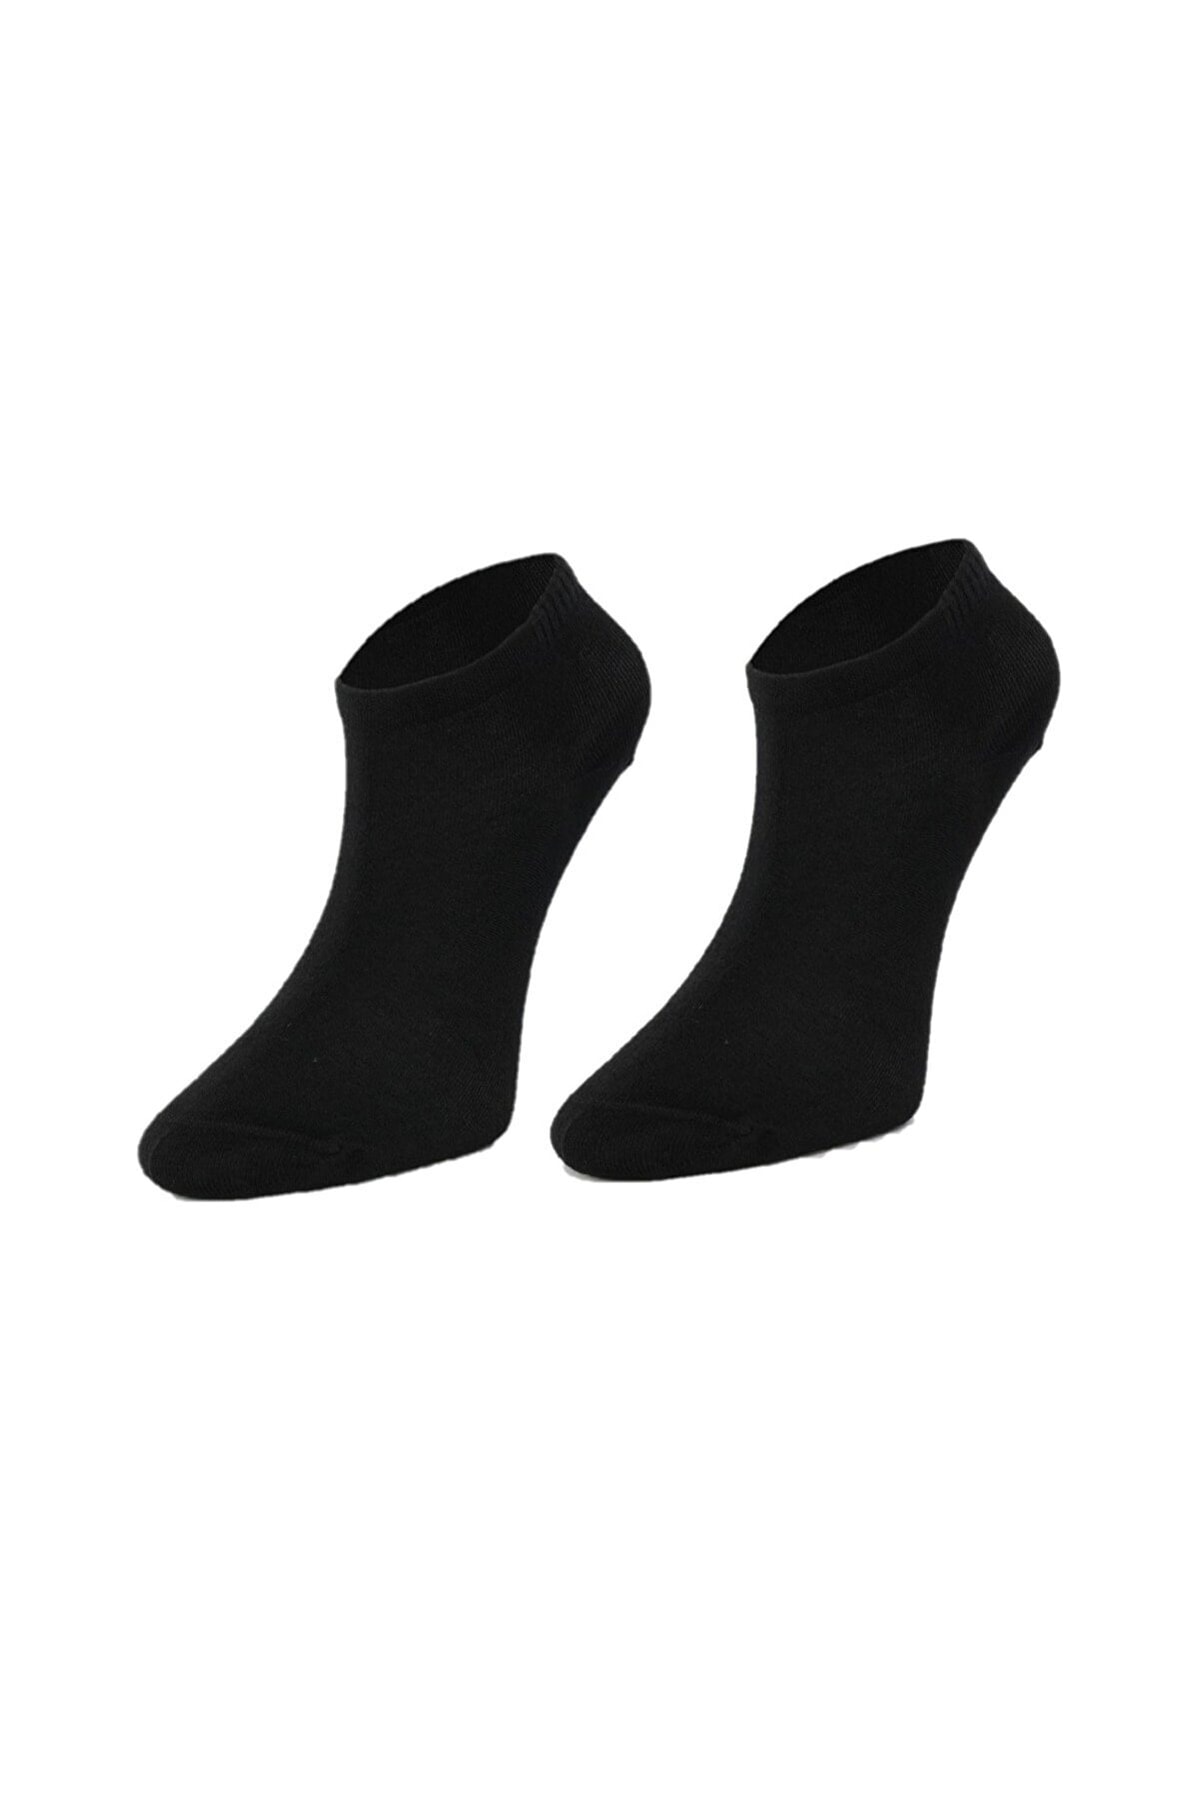 Moodligo Erkek Bambu Çorap - Siyah - Kutulu - Patik Spor Çorabı ZO8512